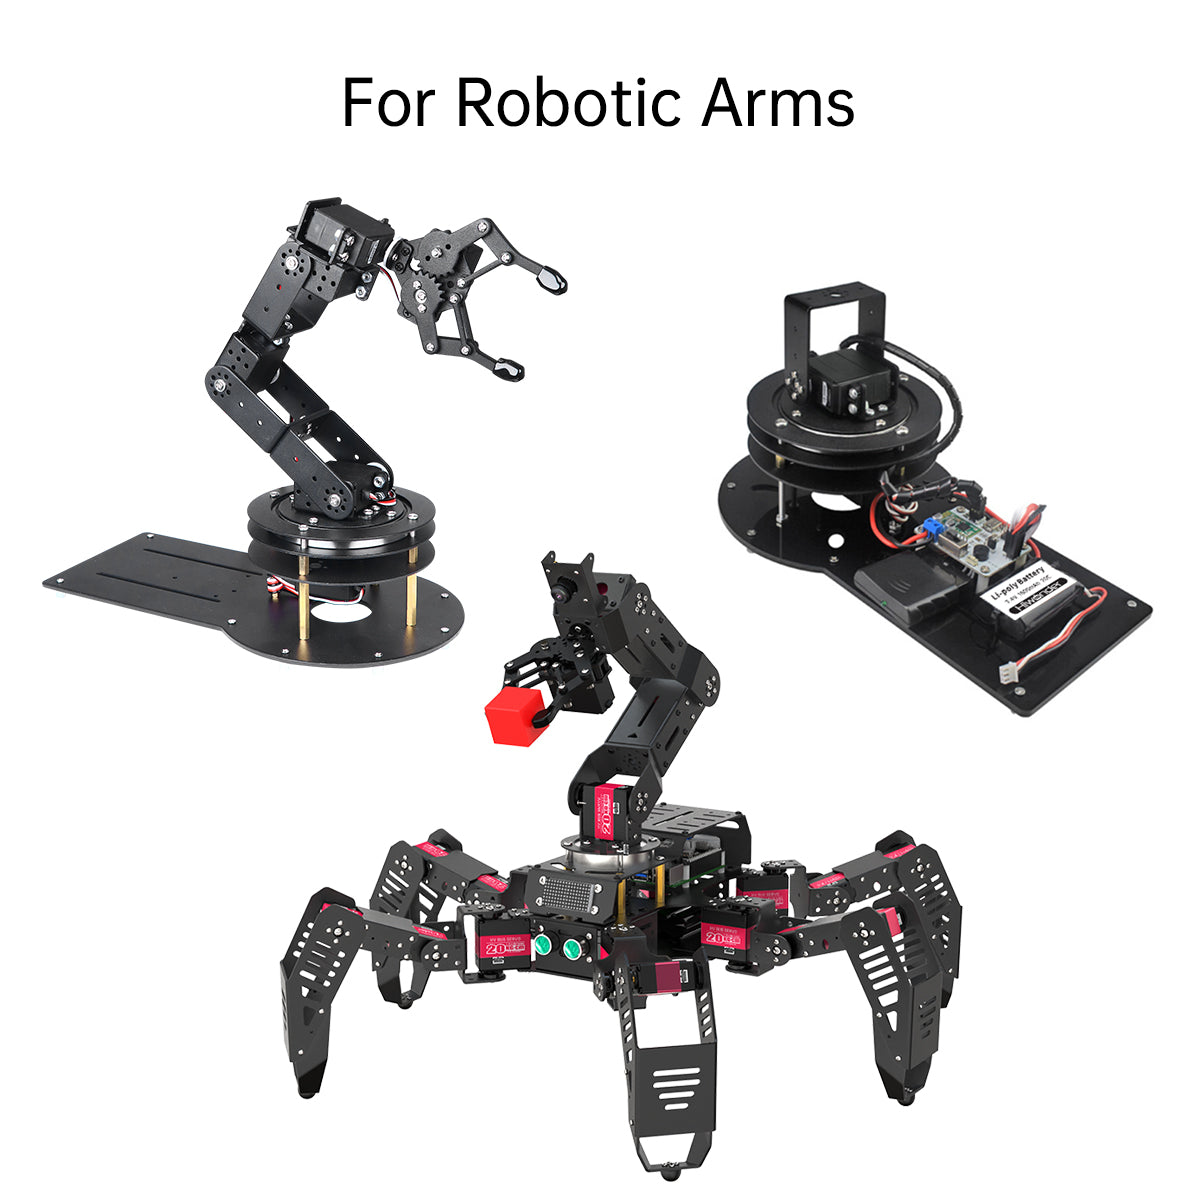 Hiwonder 2 DoF Pan Tilt Digital Servo Kit Full Metal Bracket for Building Robot Robotic Arms and More Robot DIY Kit (unassembled)